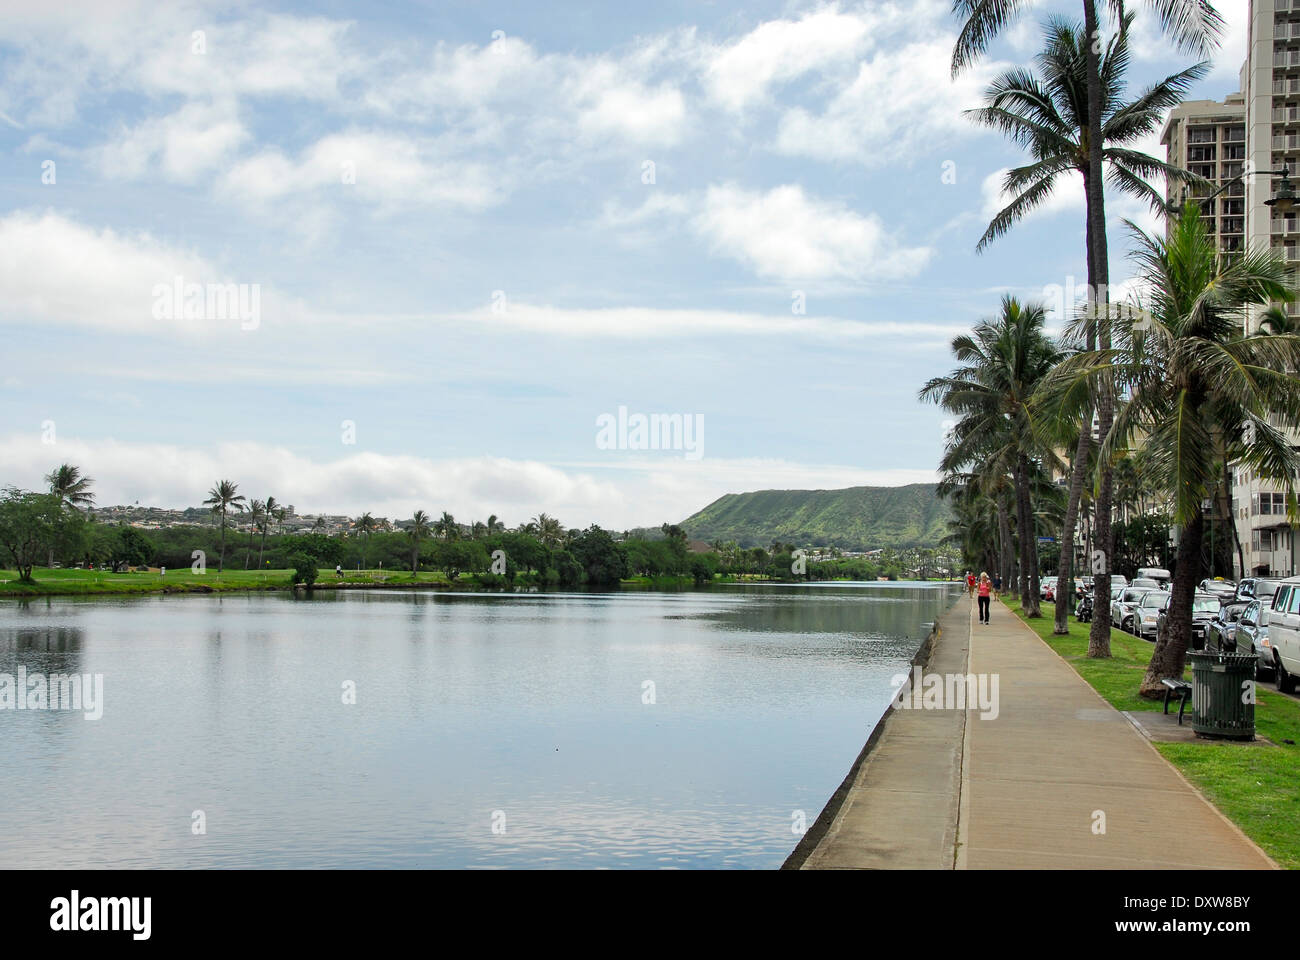 Le canal Ala Wai dans la plage de Waikiki à Honolulu, l'île d'Oahu, dans l'état de New York Banque D'Images